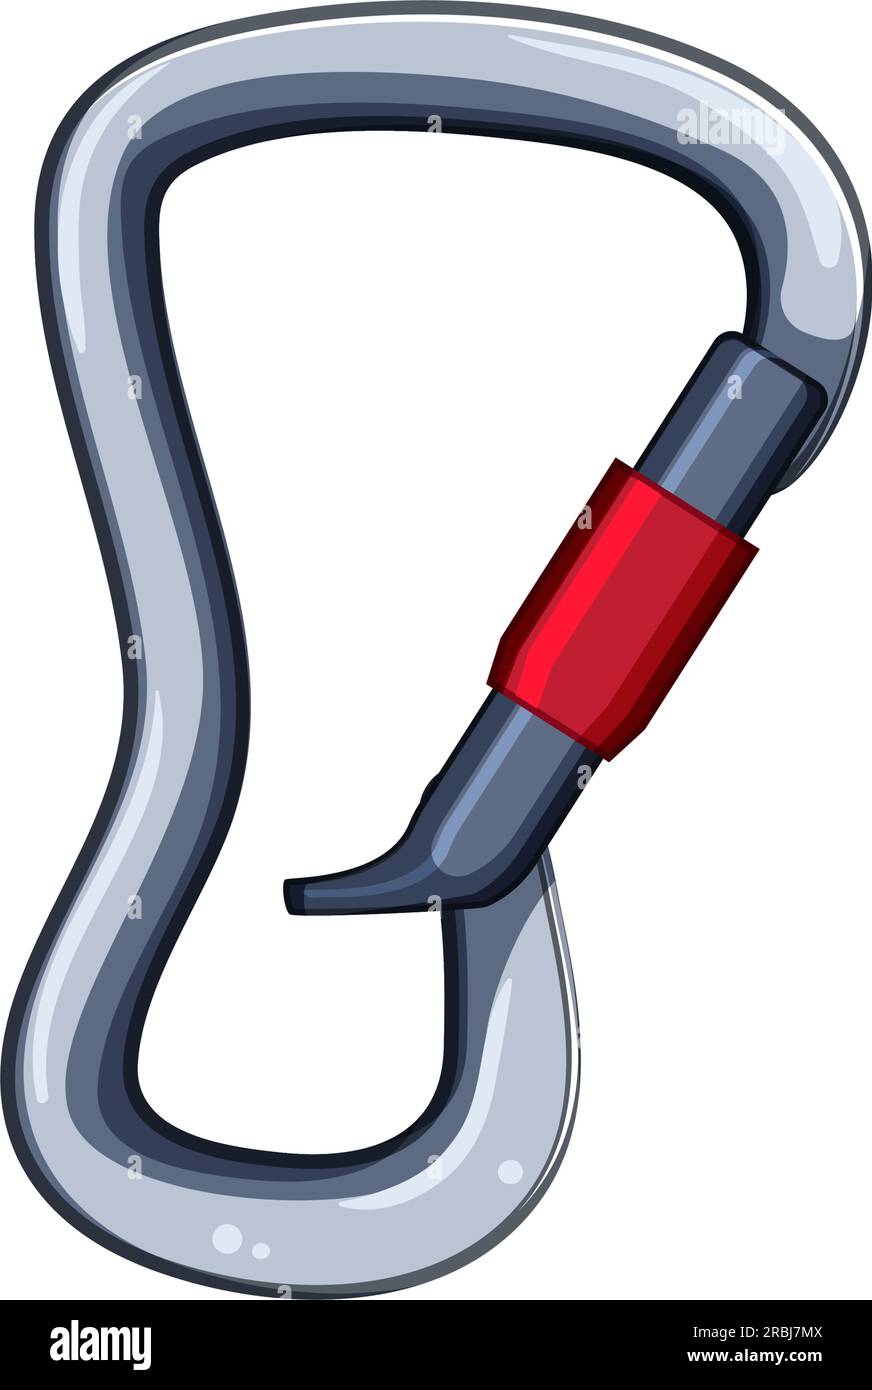 hook carabiner clip cartoon vector illustration Stock Vector Image